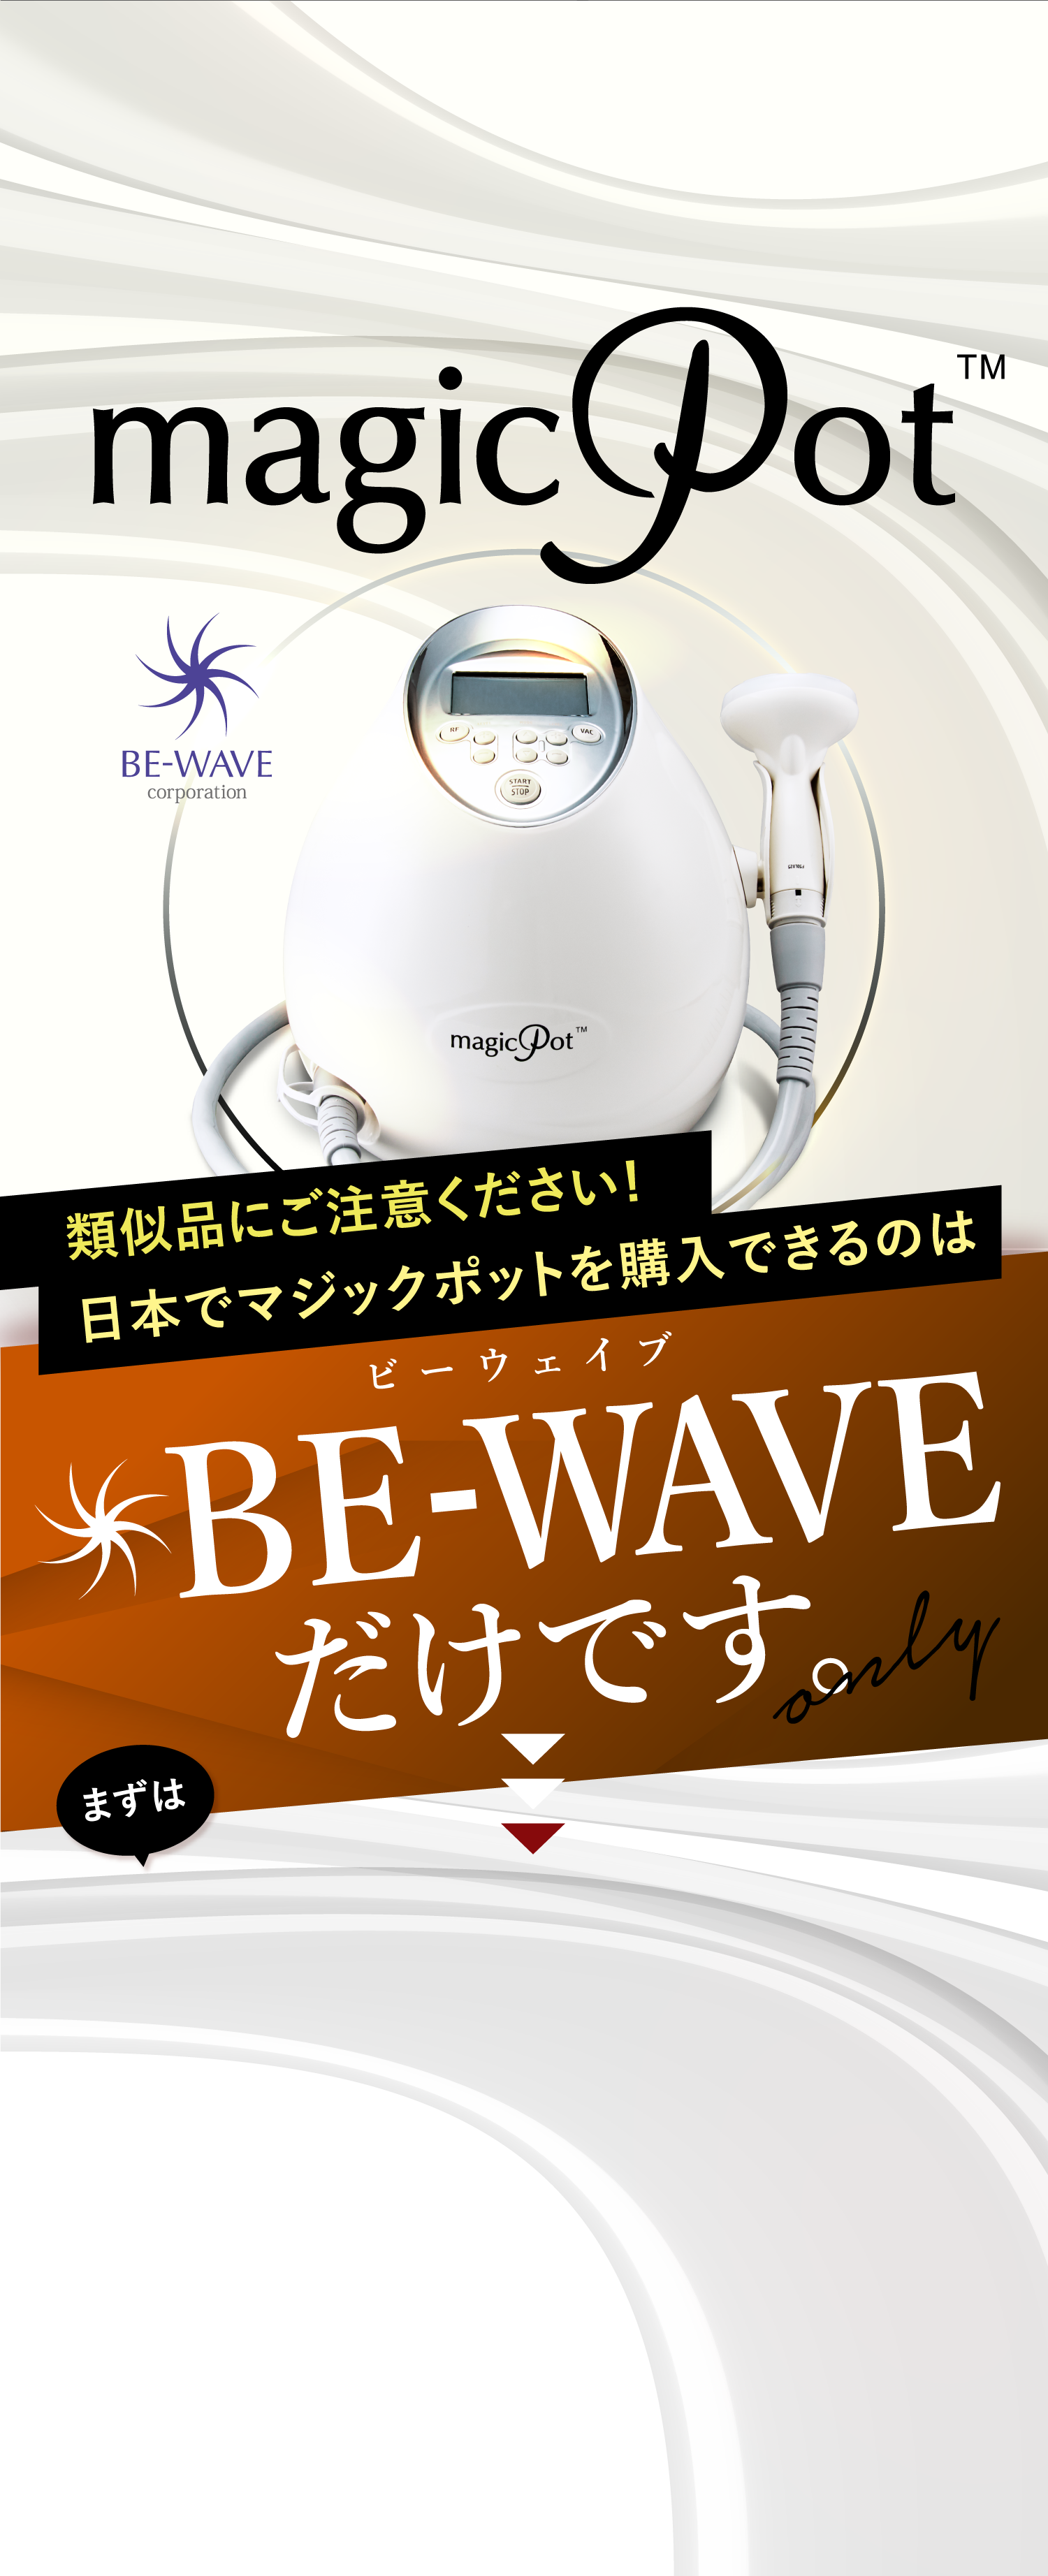 世界で人気のマシン類似品にご注意ください!日本でマジックポットを購入できるのはビーウェイブBE-WAVEだけです。まずはお気軽にお問い合わせください！